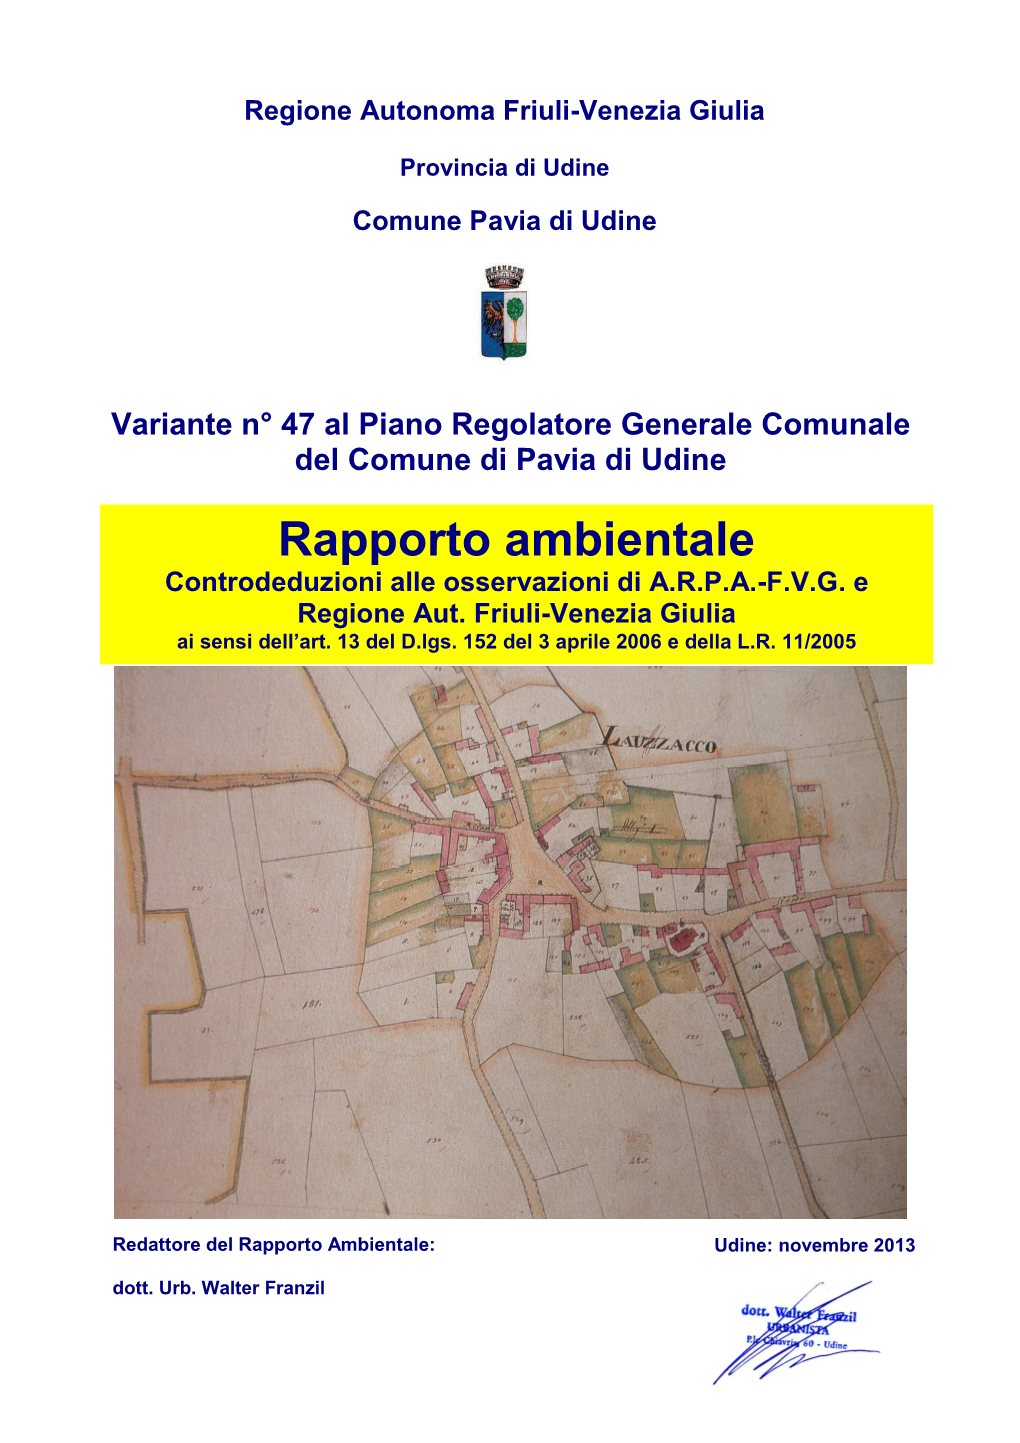 Controdeduzioni Rapporto Ambientale Var. 47 PRGC Pavia Di